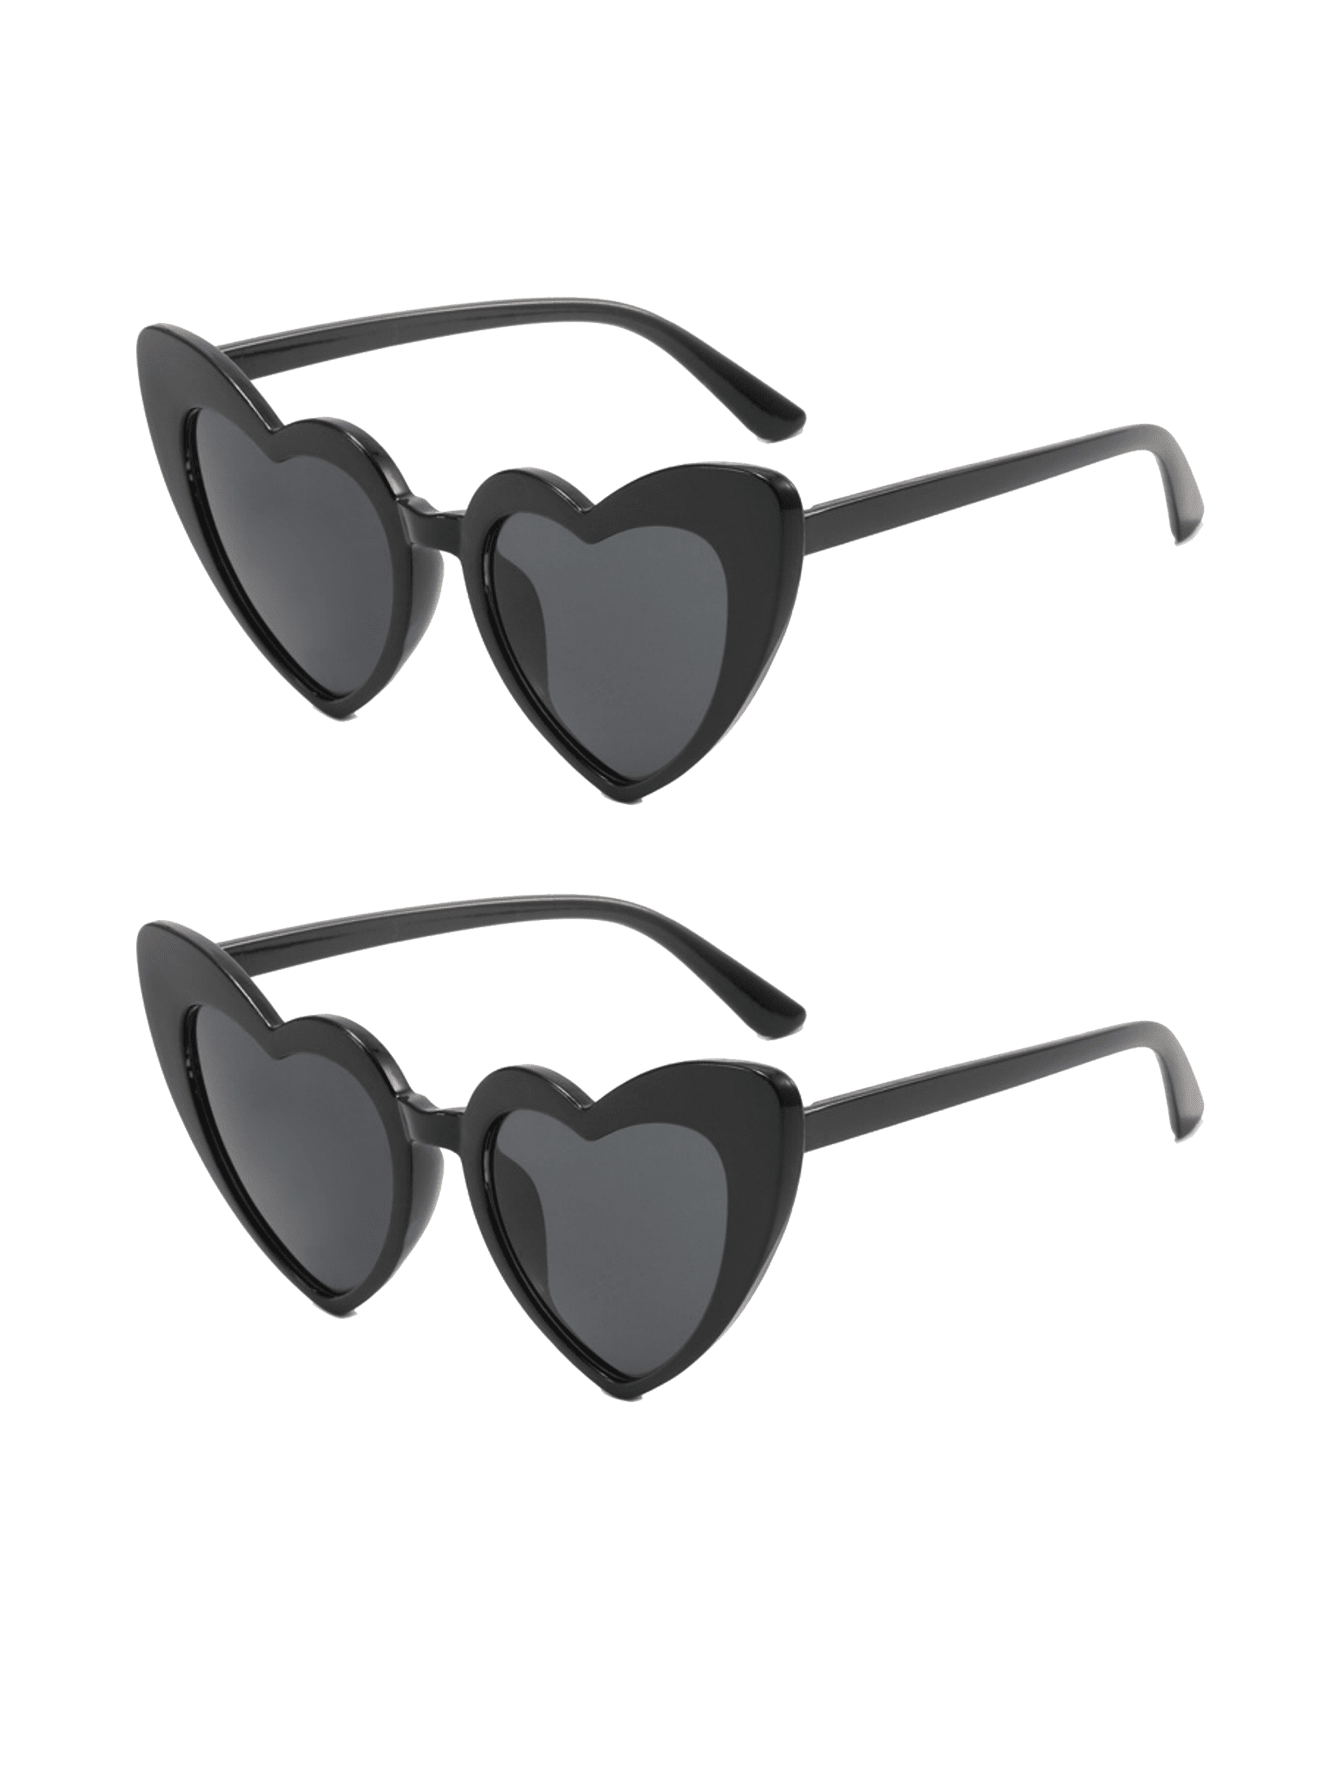 2 шт. солнцезащитные очки в форме сердца для женщин